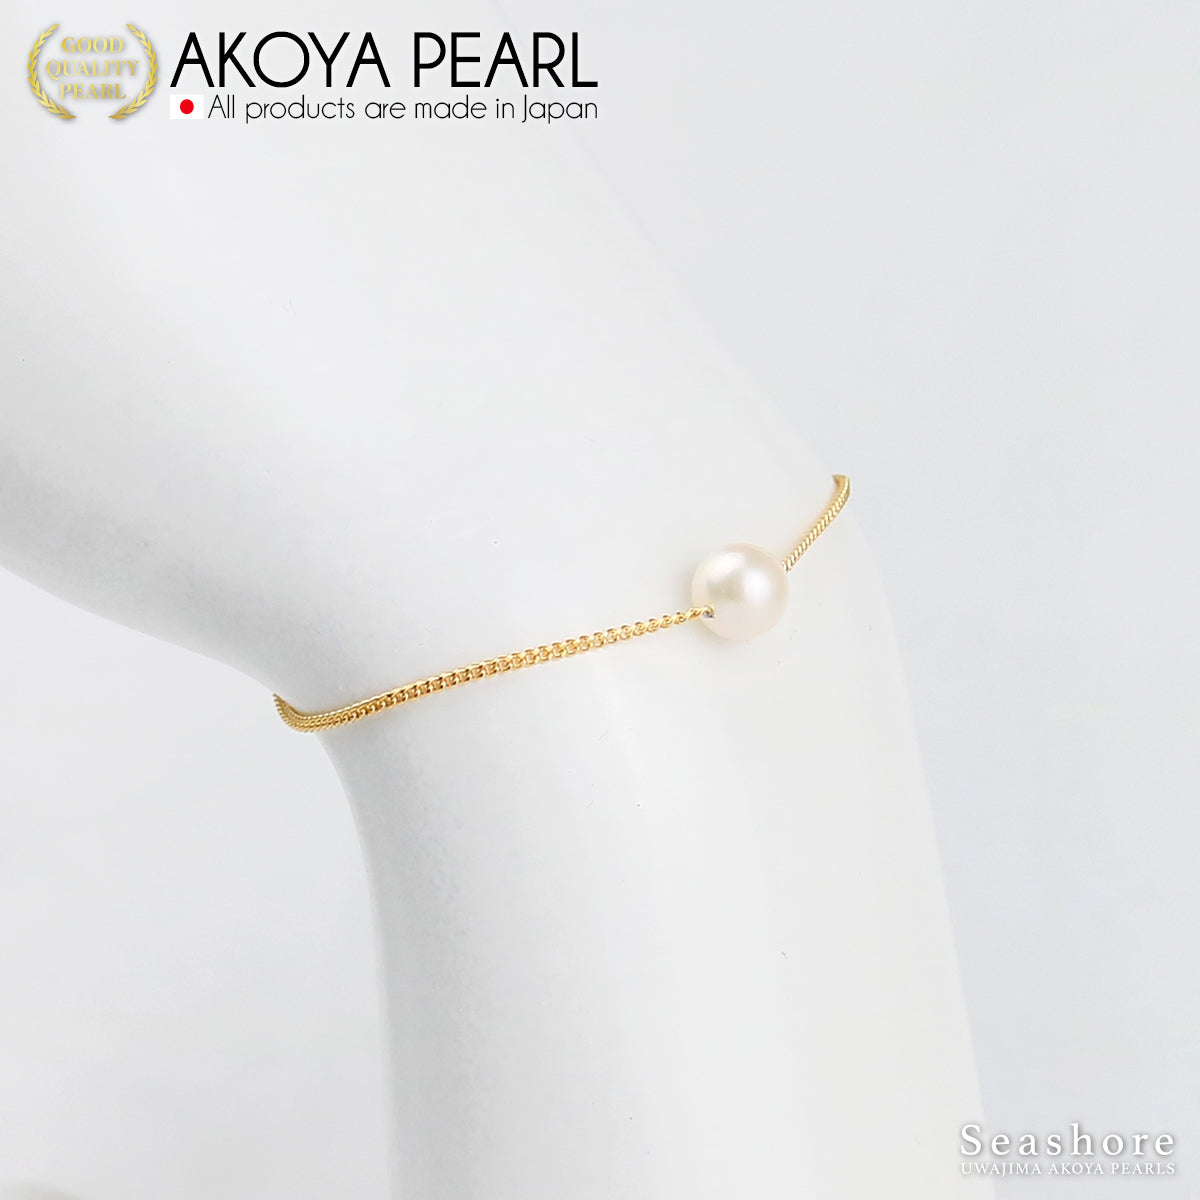 单颗珍珠手链 白色 7.0-8.0mm 黄铜铑/金 2 色 Akoya 珍珠